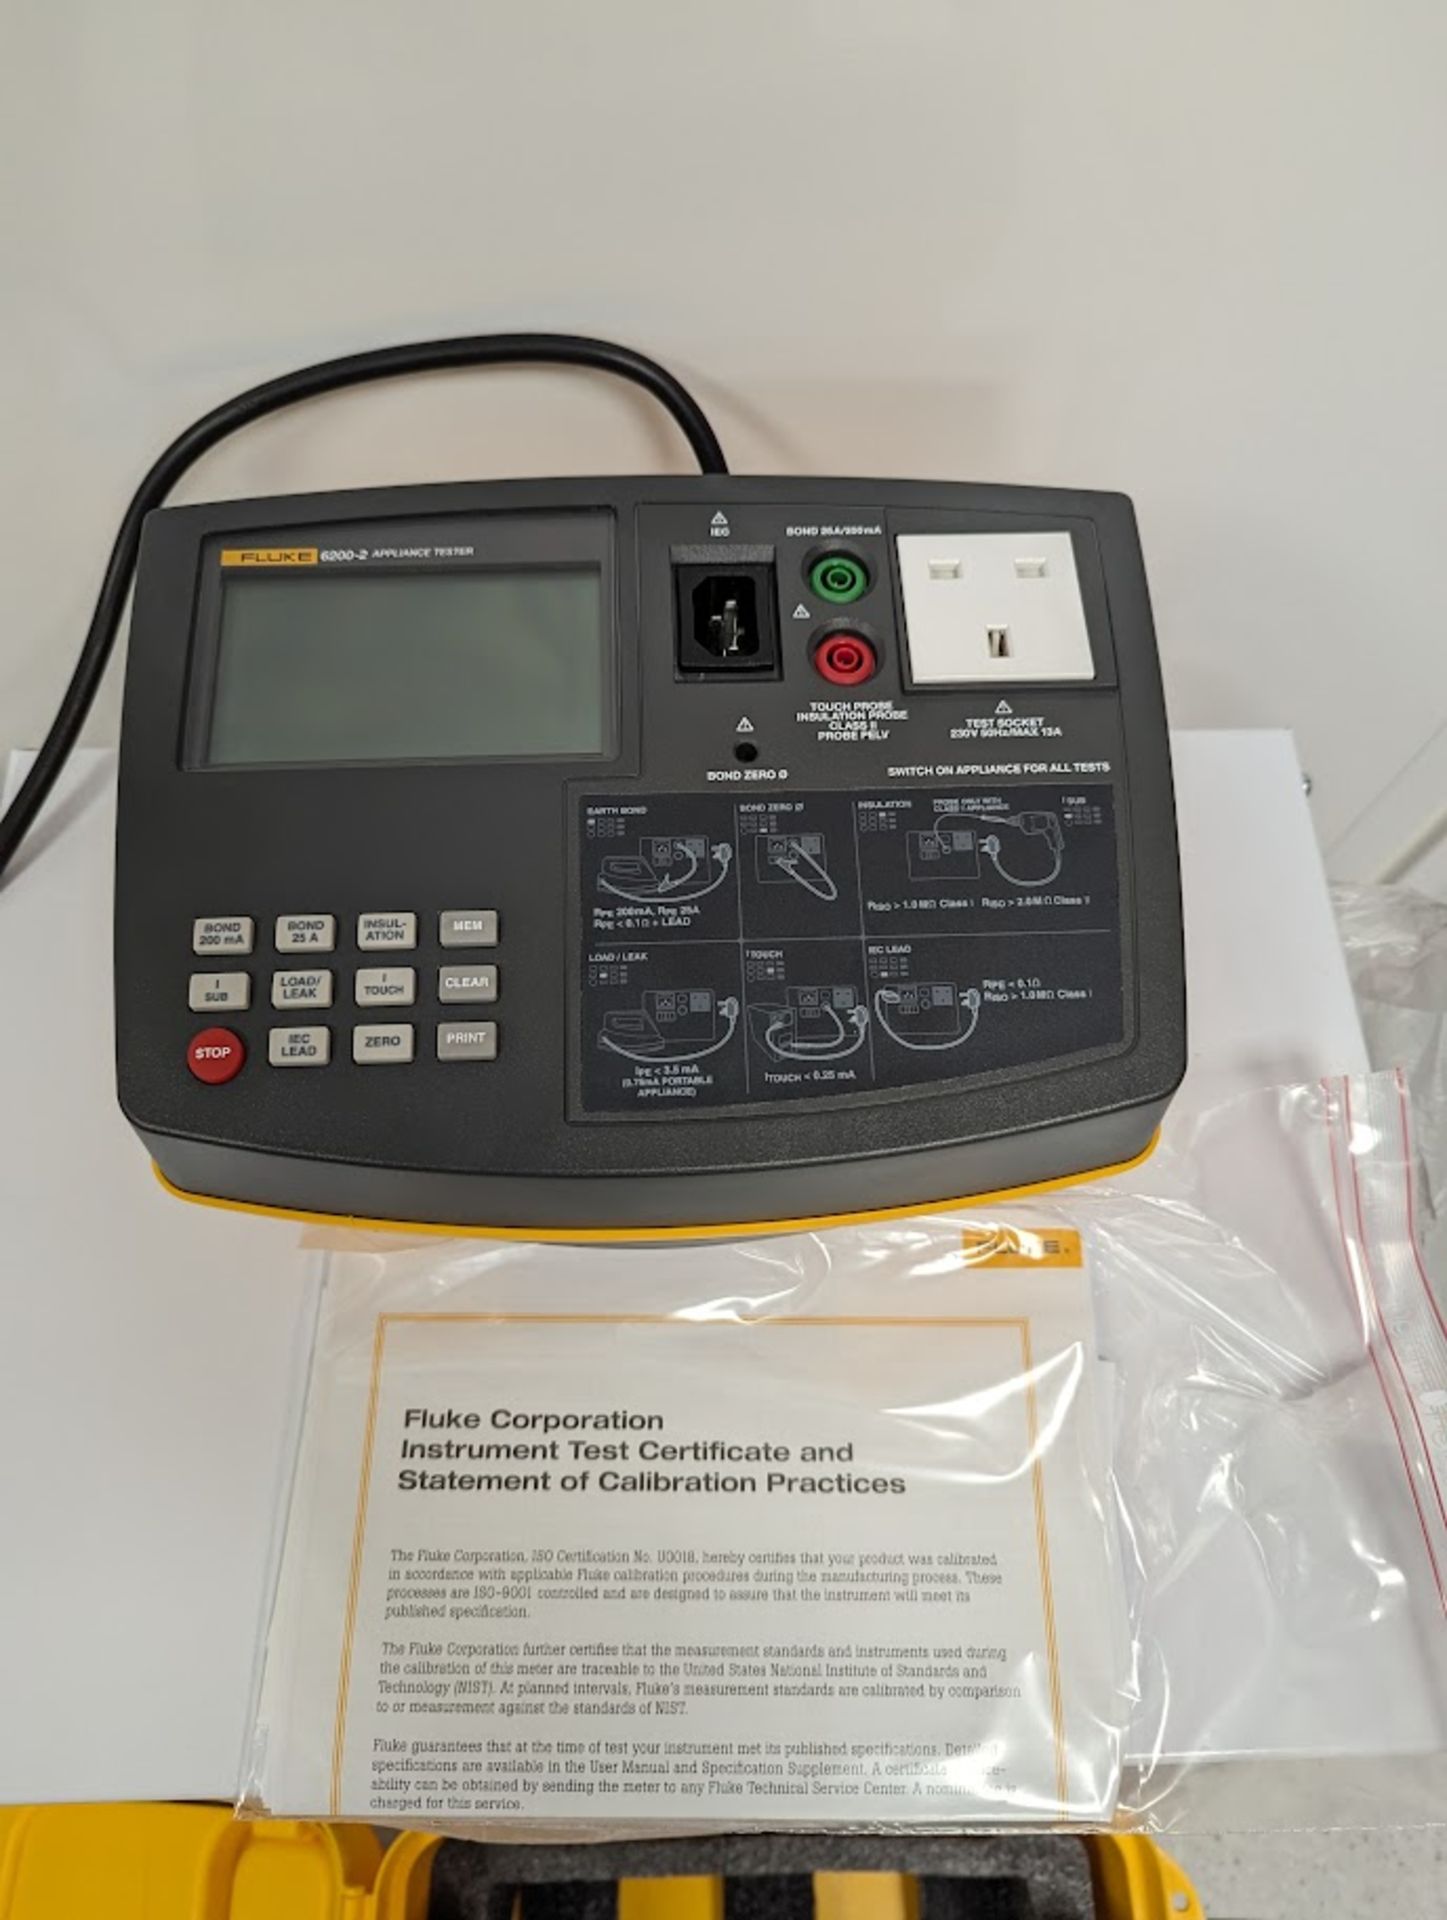 Fluke 6200-2UK Portable Appliance Tester, Serial Number ROB4795006